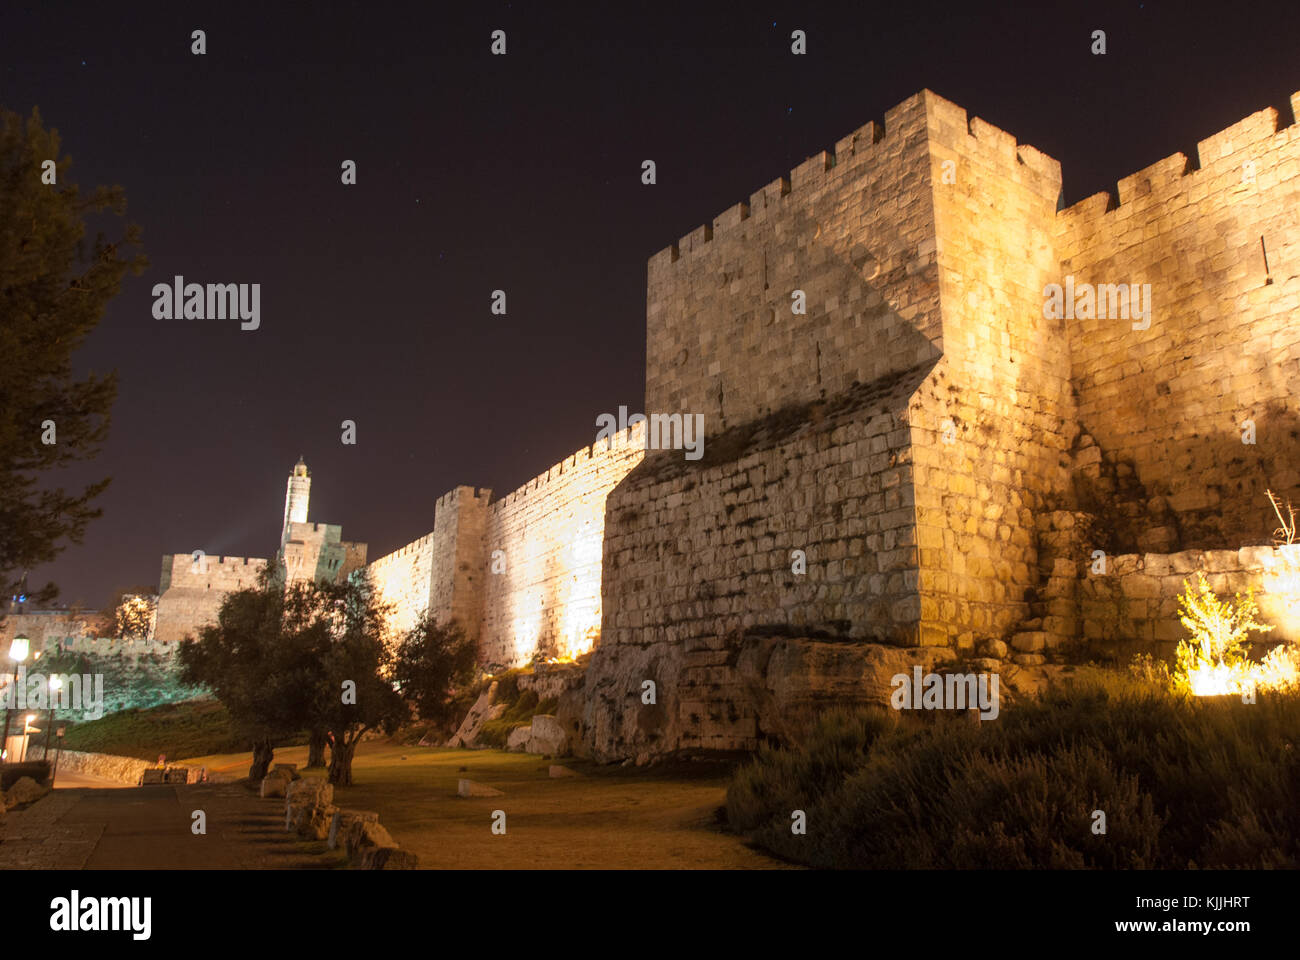 Le roi David Citadel de nuit à Jérusalem, Israël Banque D'Images